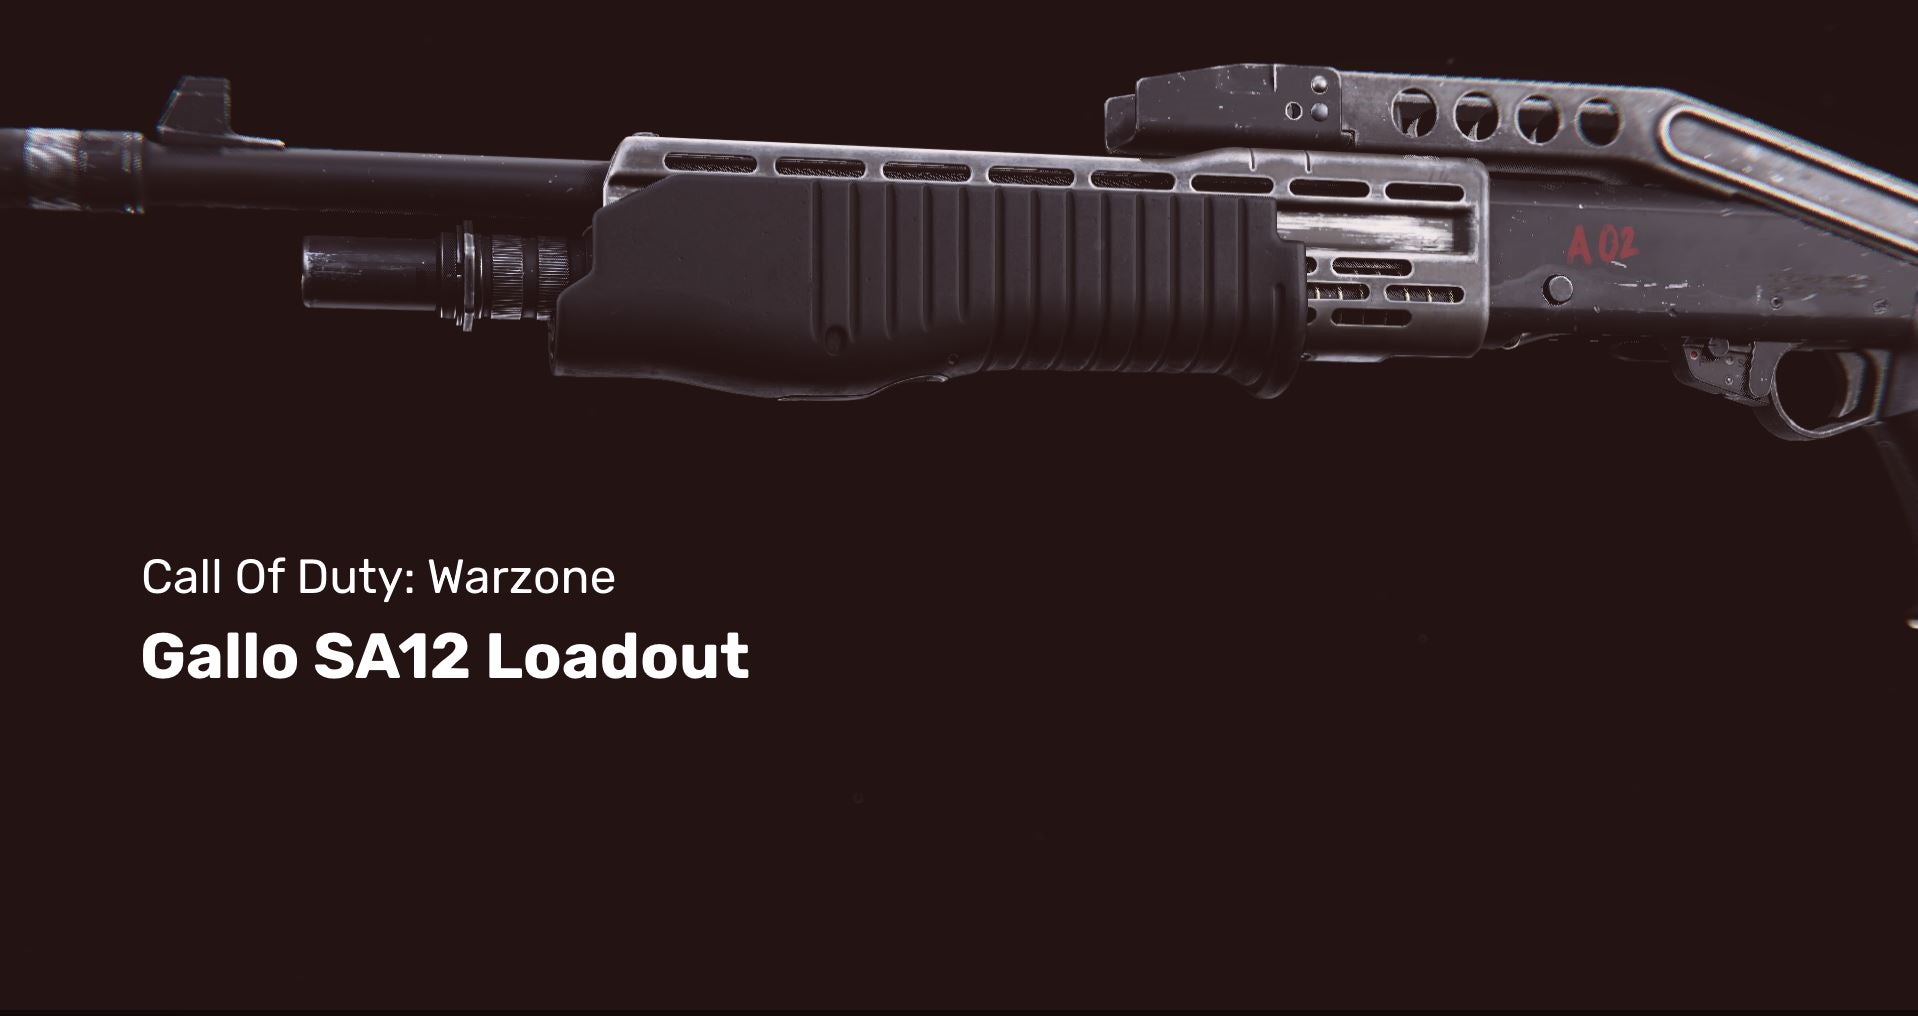 Warzone's Gallo shotgun on a dark background.